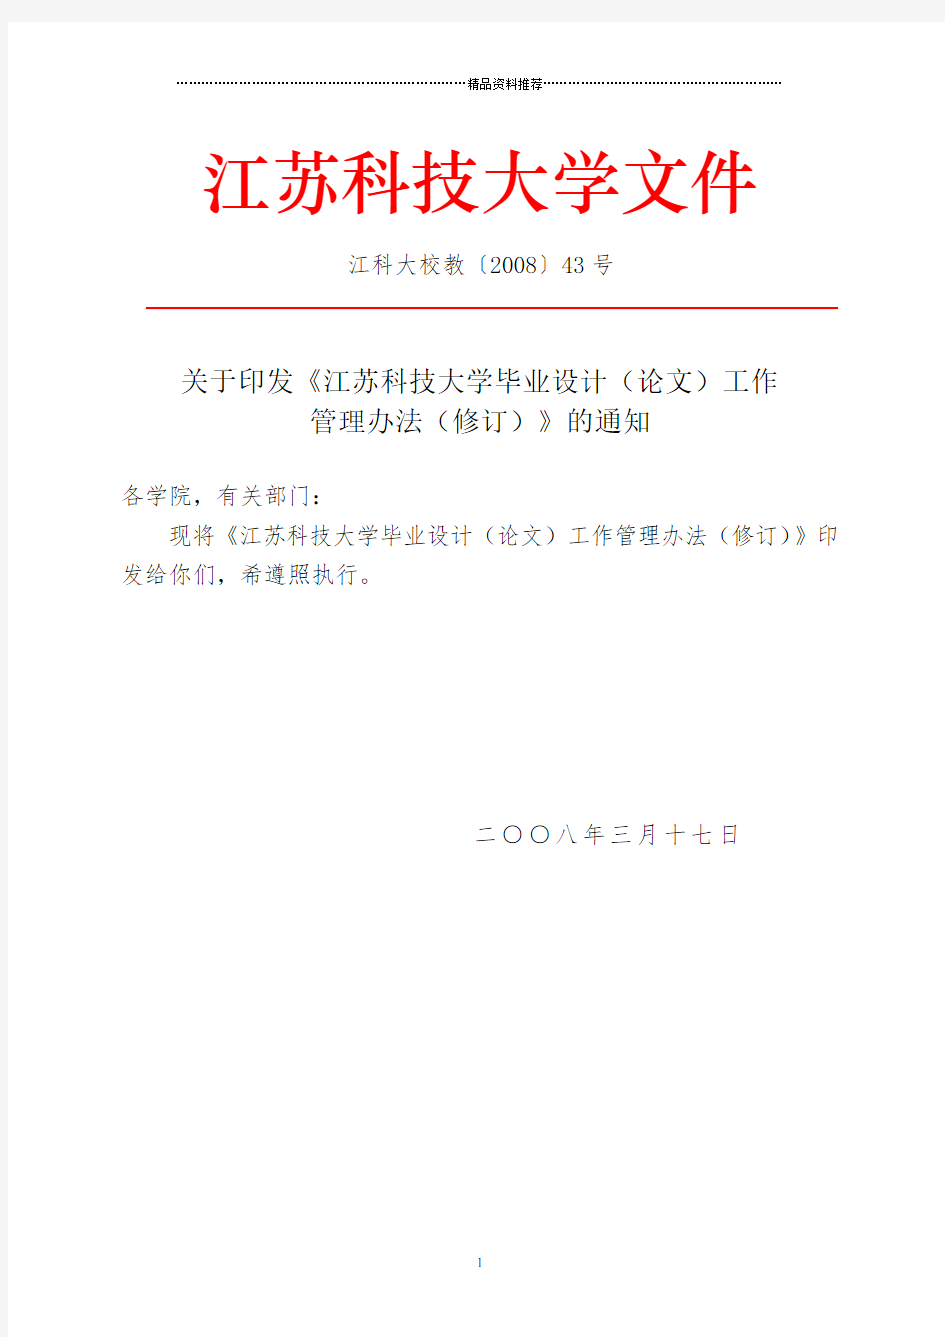 江苏科技大学毕业设计(论文)工作管理办法(修订)